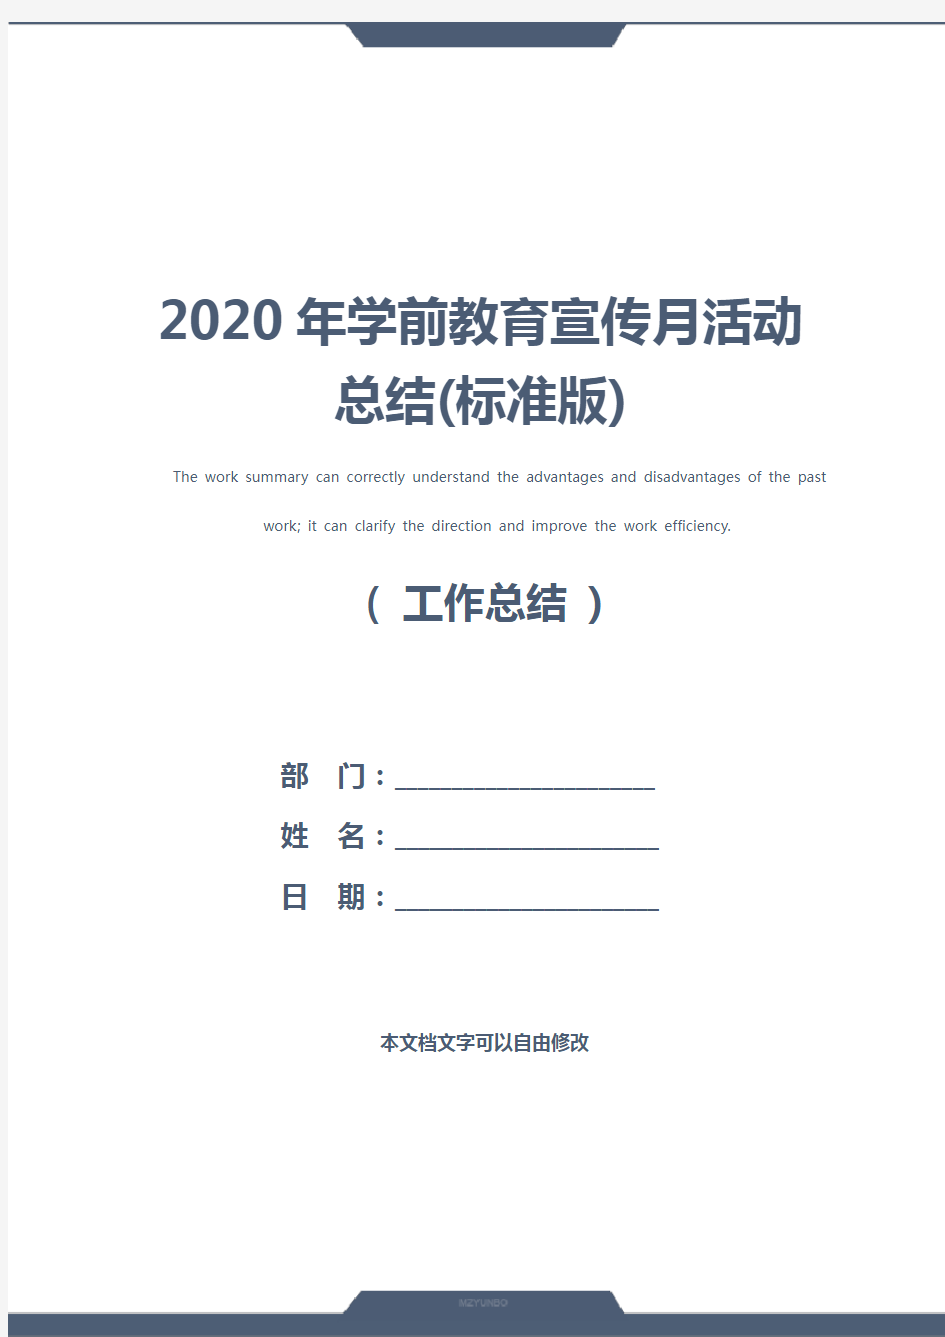 2020年学前教育宣传月活动总结(标准版)